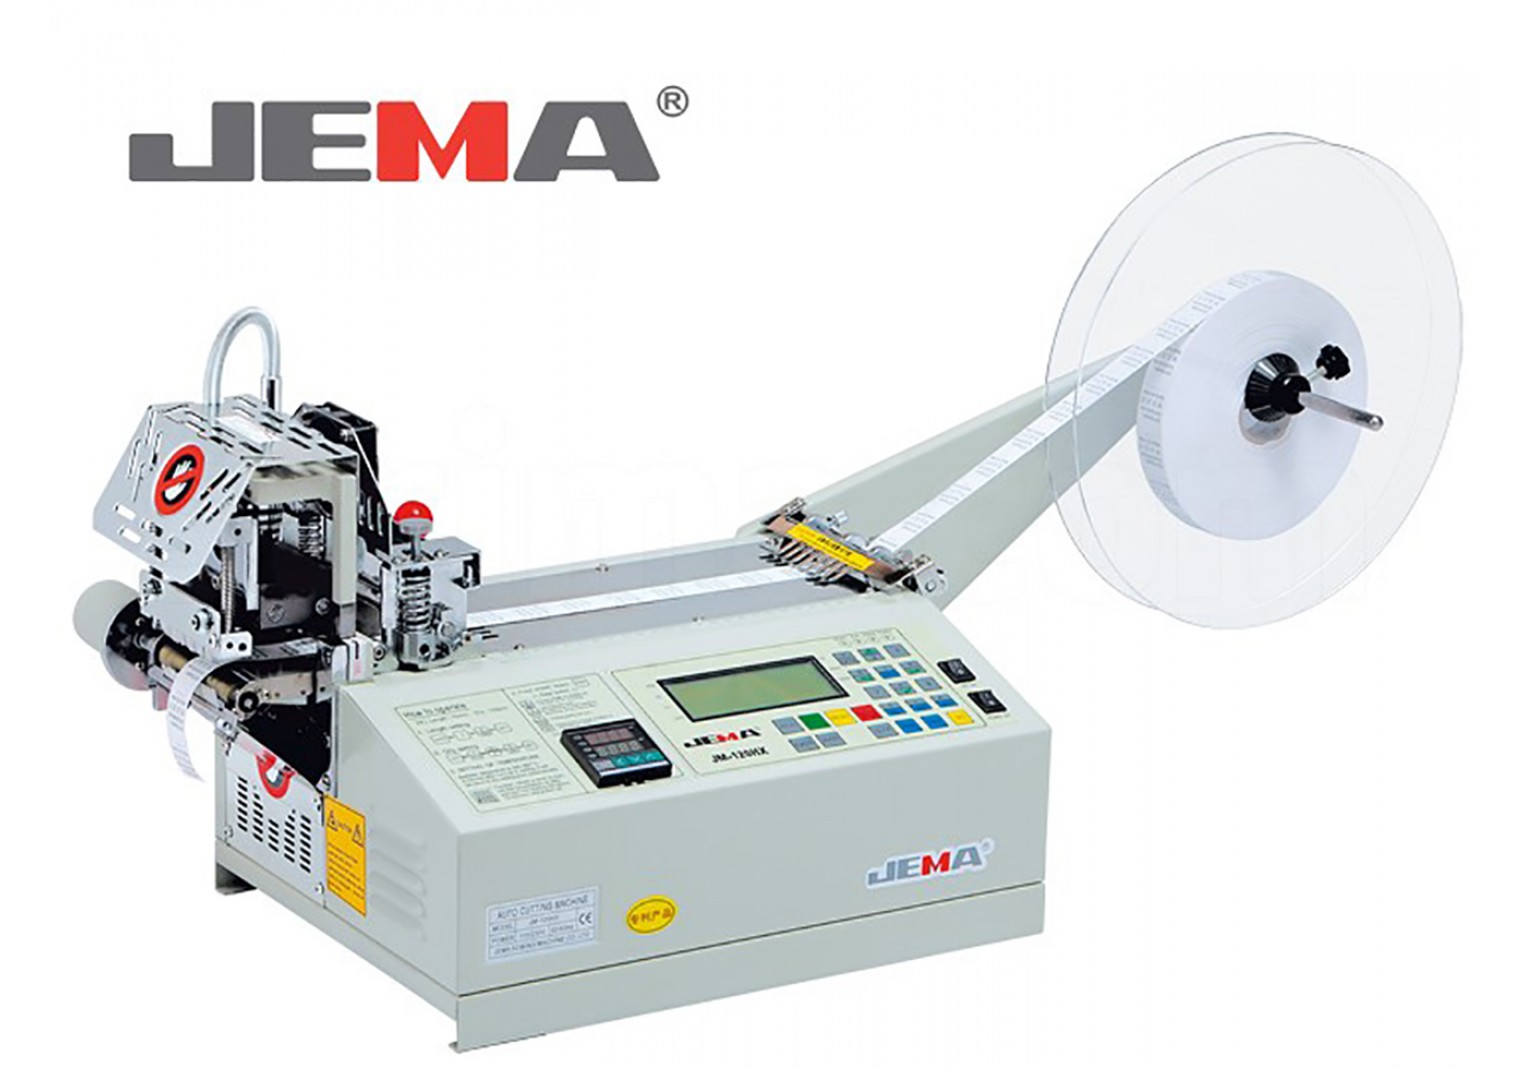 JM-120HX Automatic tape cutting machine